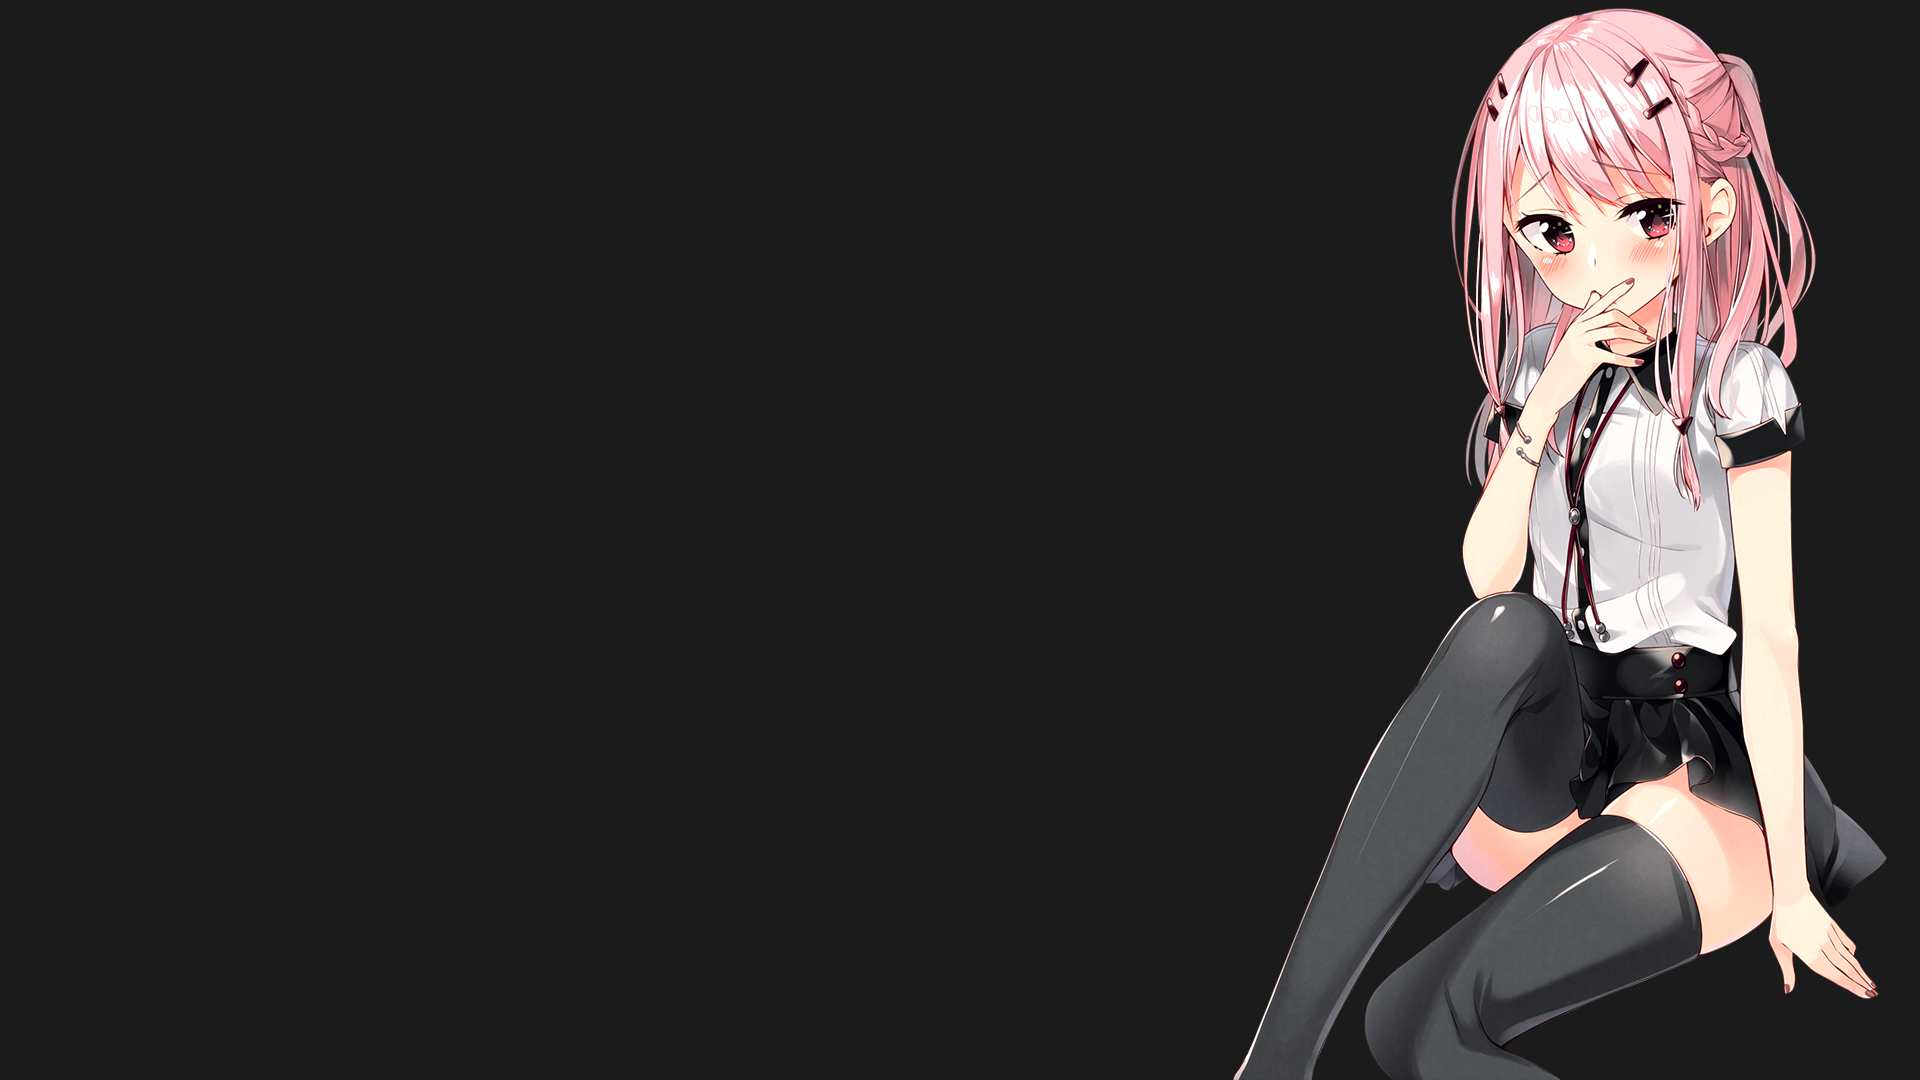 Wallpaper / anime girls, minimalism, pink hair, pink eyes, black background, long hair, hair pins, blushing free download